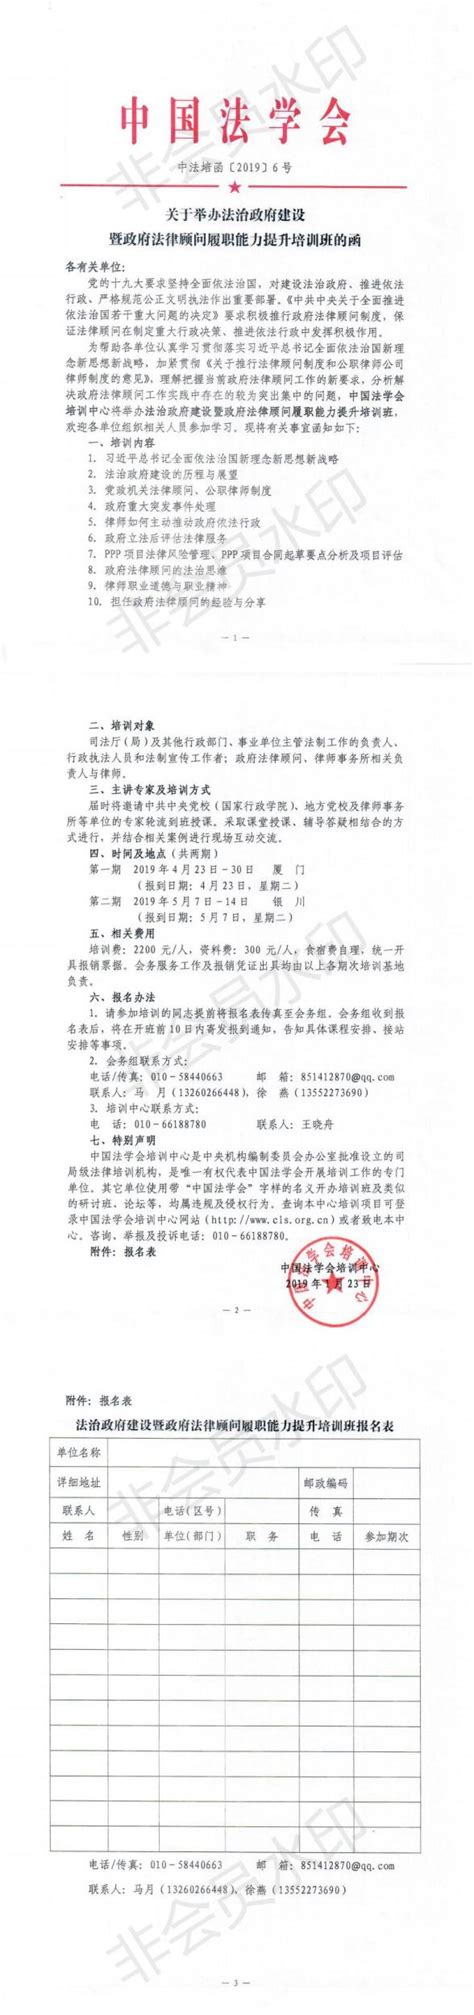 中国法学会关于举办法治政府建设暨政府法律顾问履职能力提升培训班的函-河北律师网-长城网站群系统